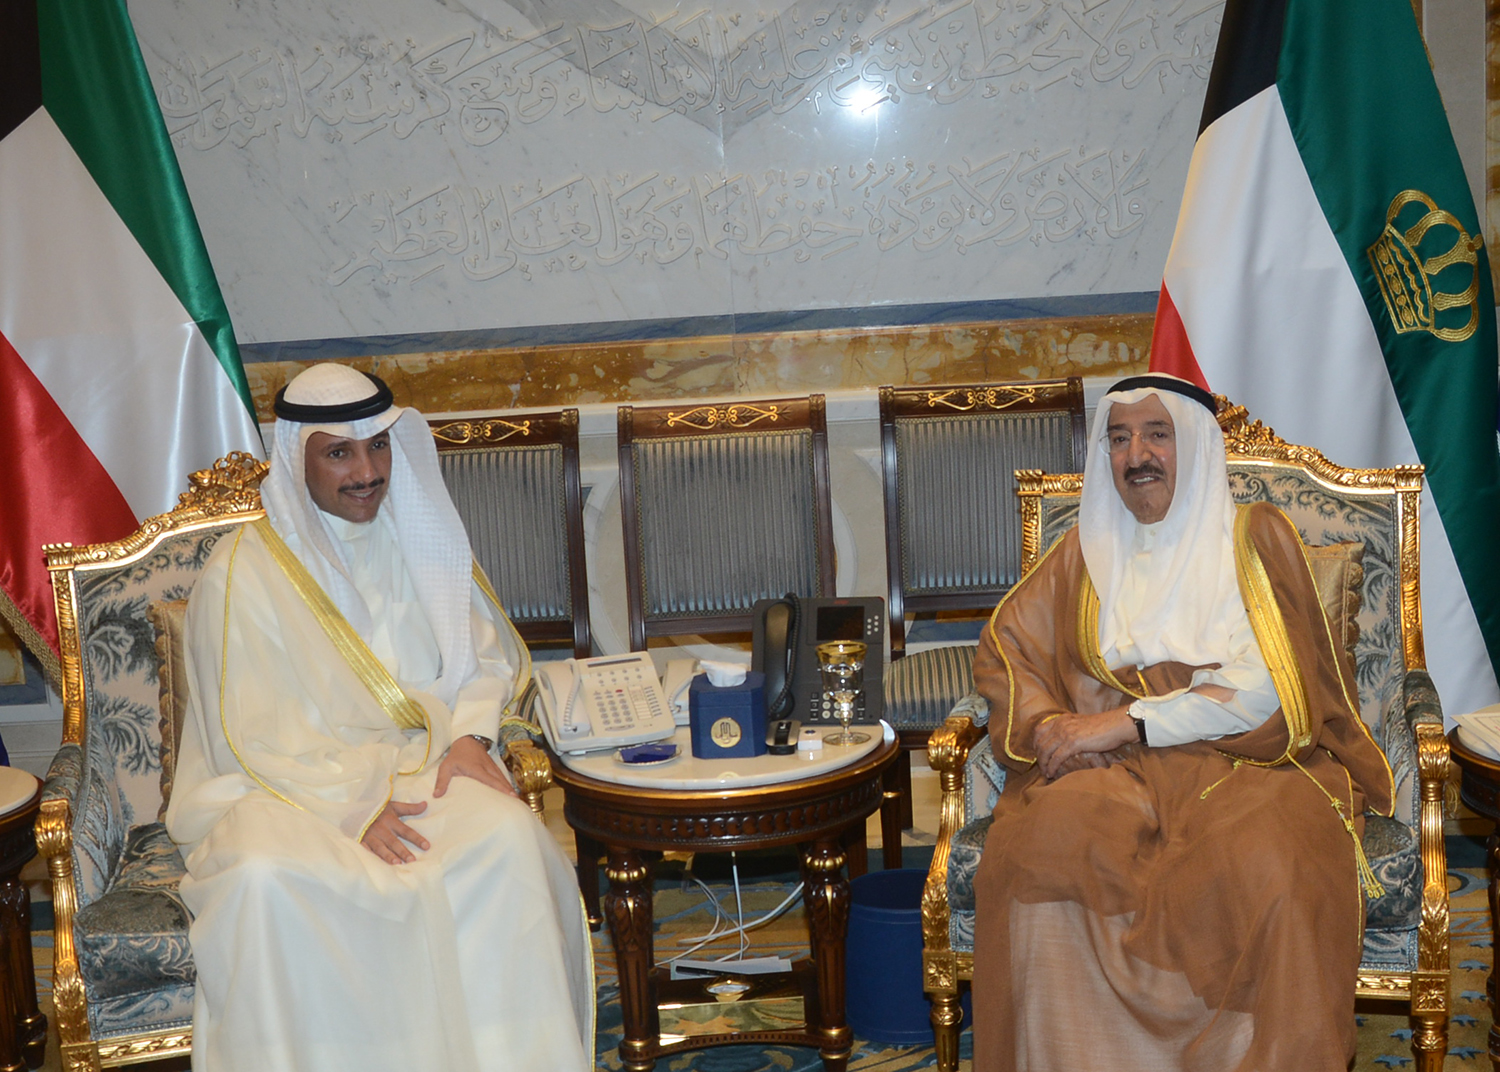 His Highness the Amir Sheikh Sabah Al-Ahmad Al-Jaber Al-Sabah received National Assembly Speaker Marzouq Al-Ghanim